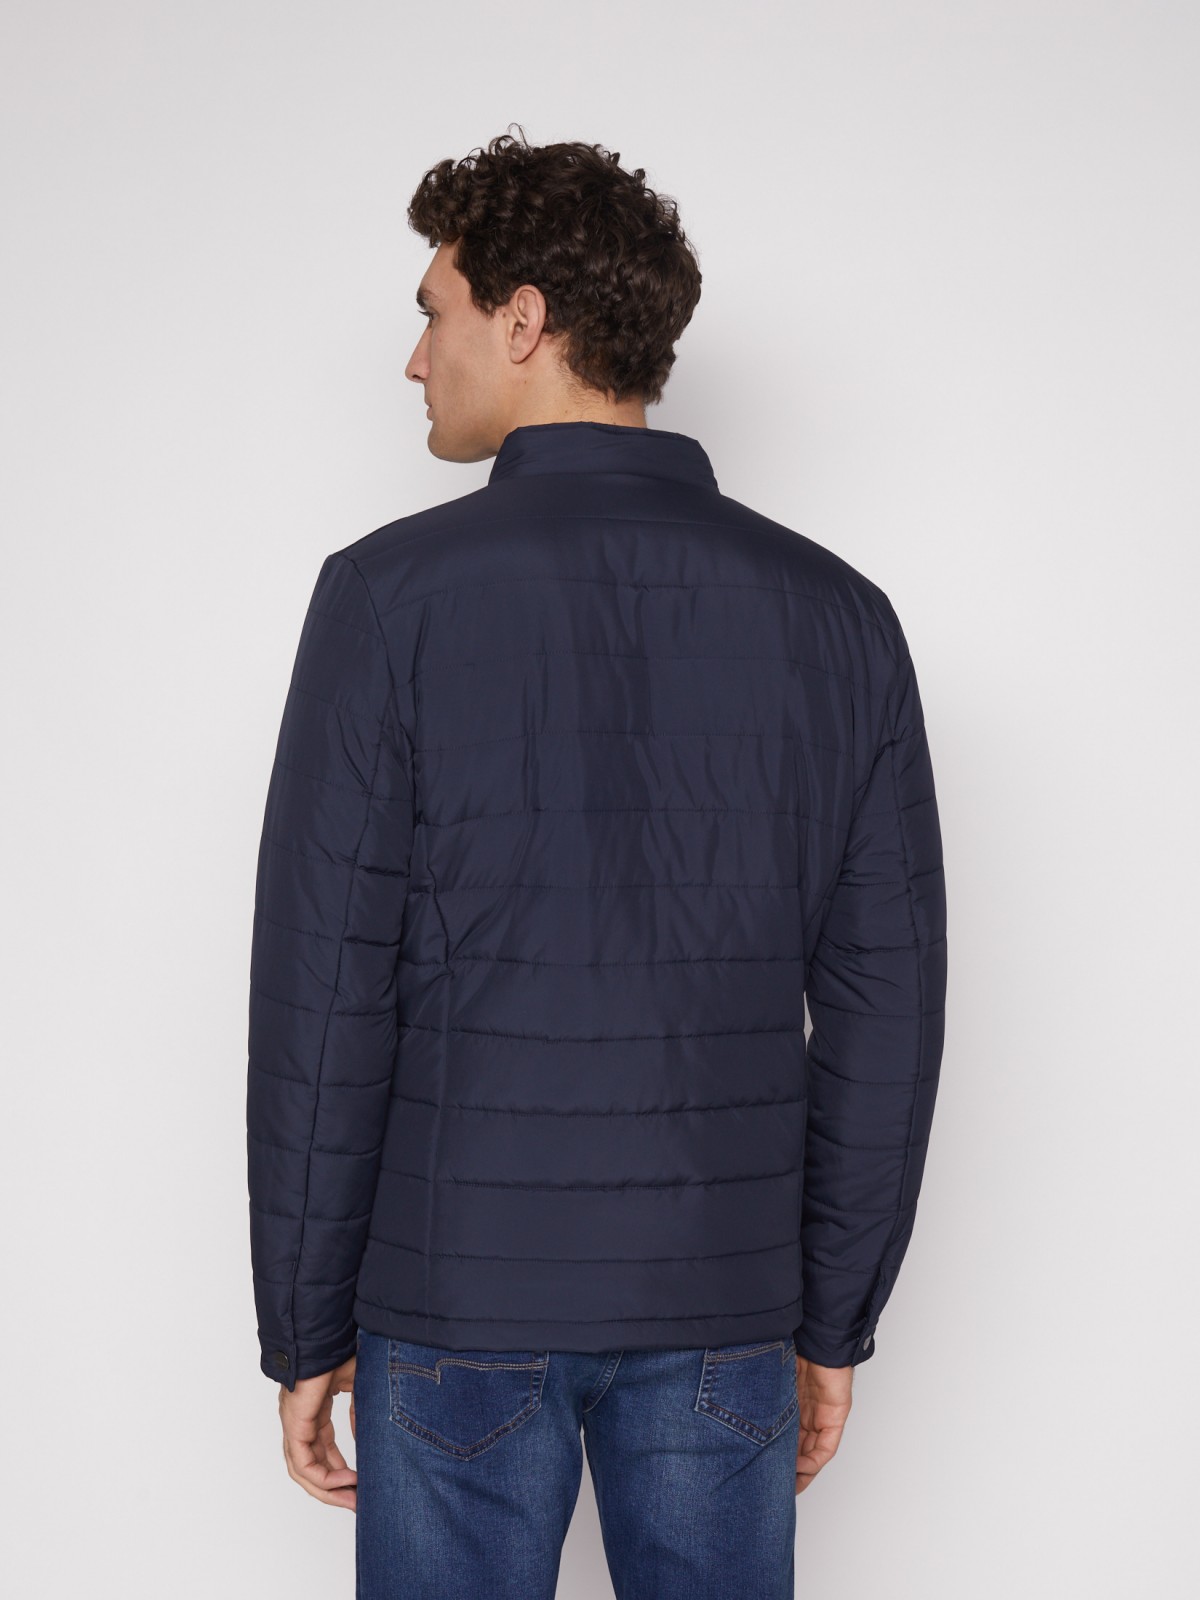 Куртка-косуха с воротником-стойкой zolla 012135139134, цвет синий, размер M - фото 6